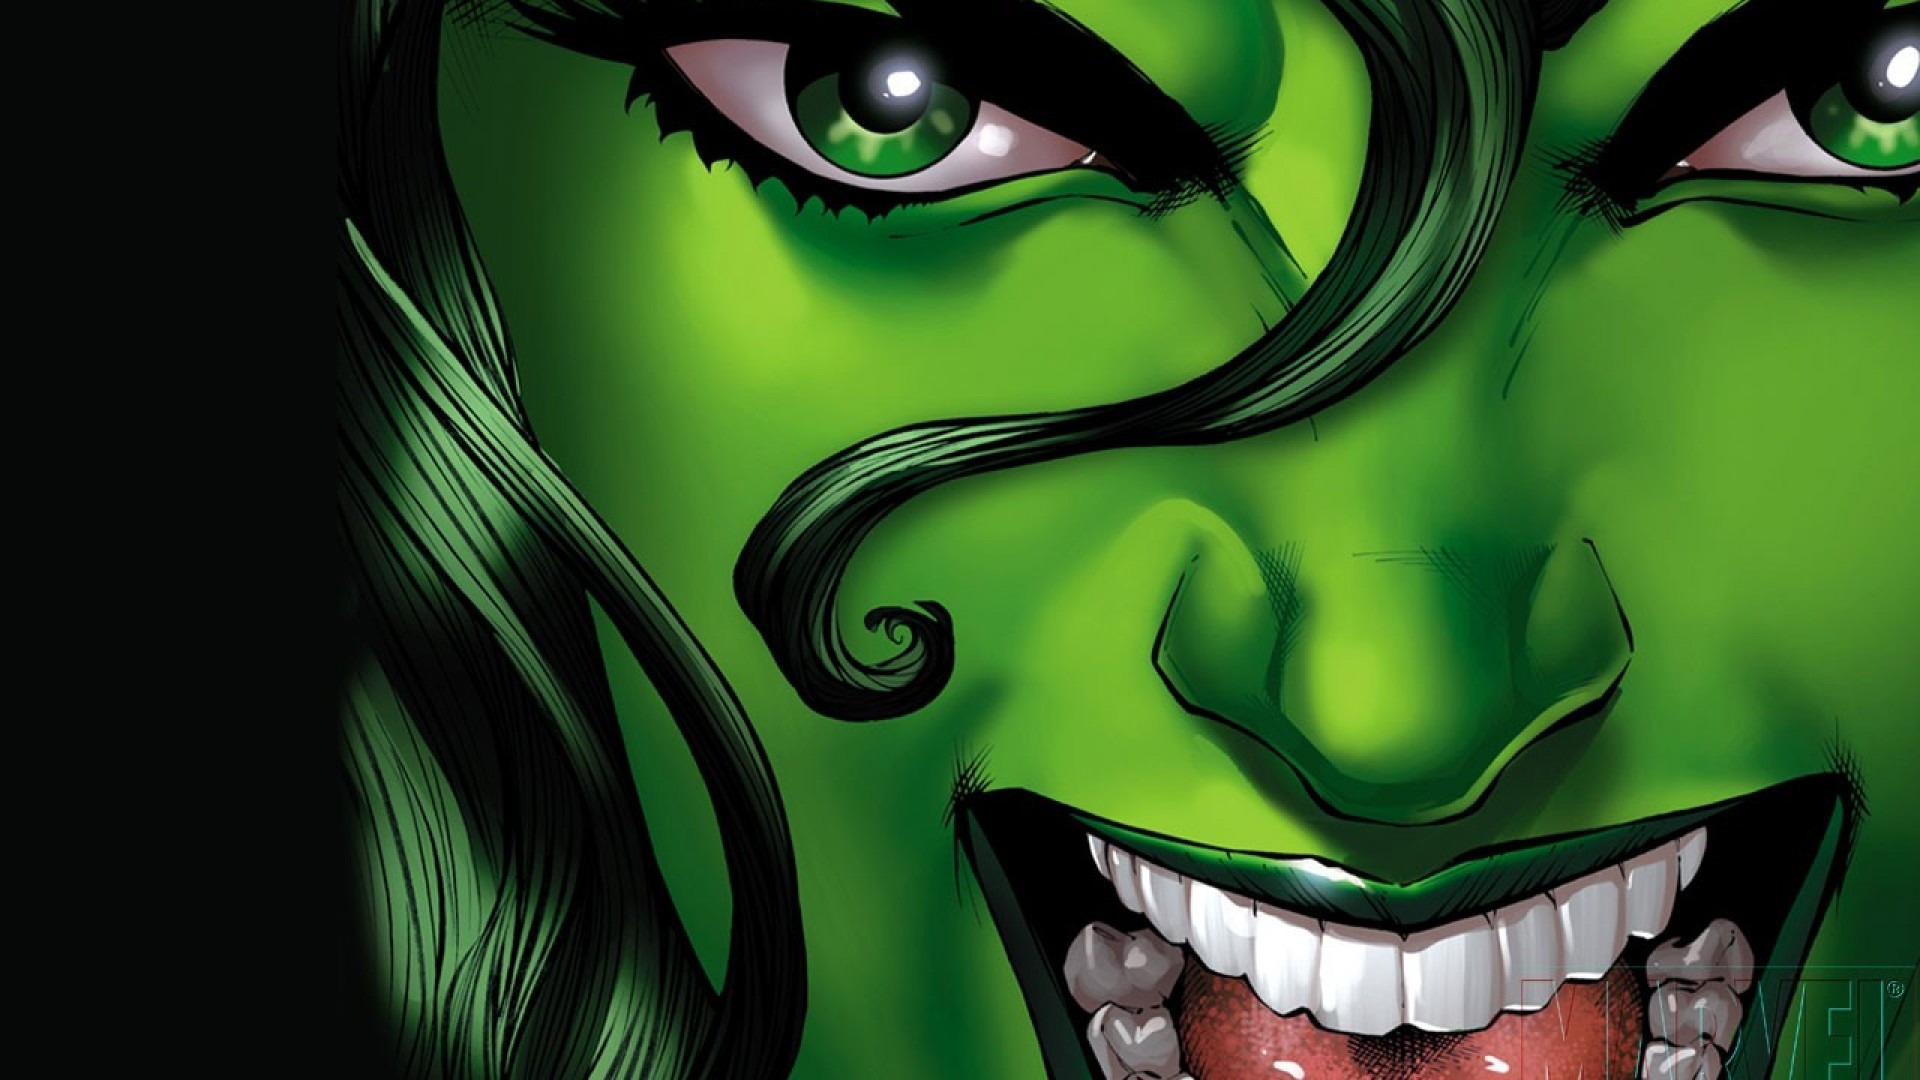 1920x1080 Comics - She-Hulk Jennifer Walters Wallpaper